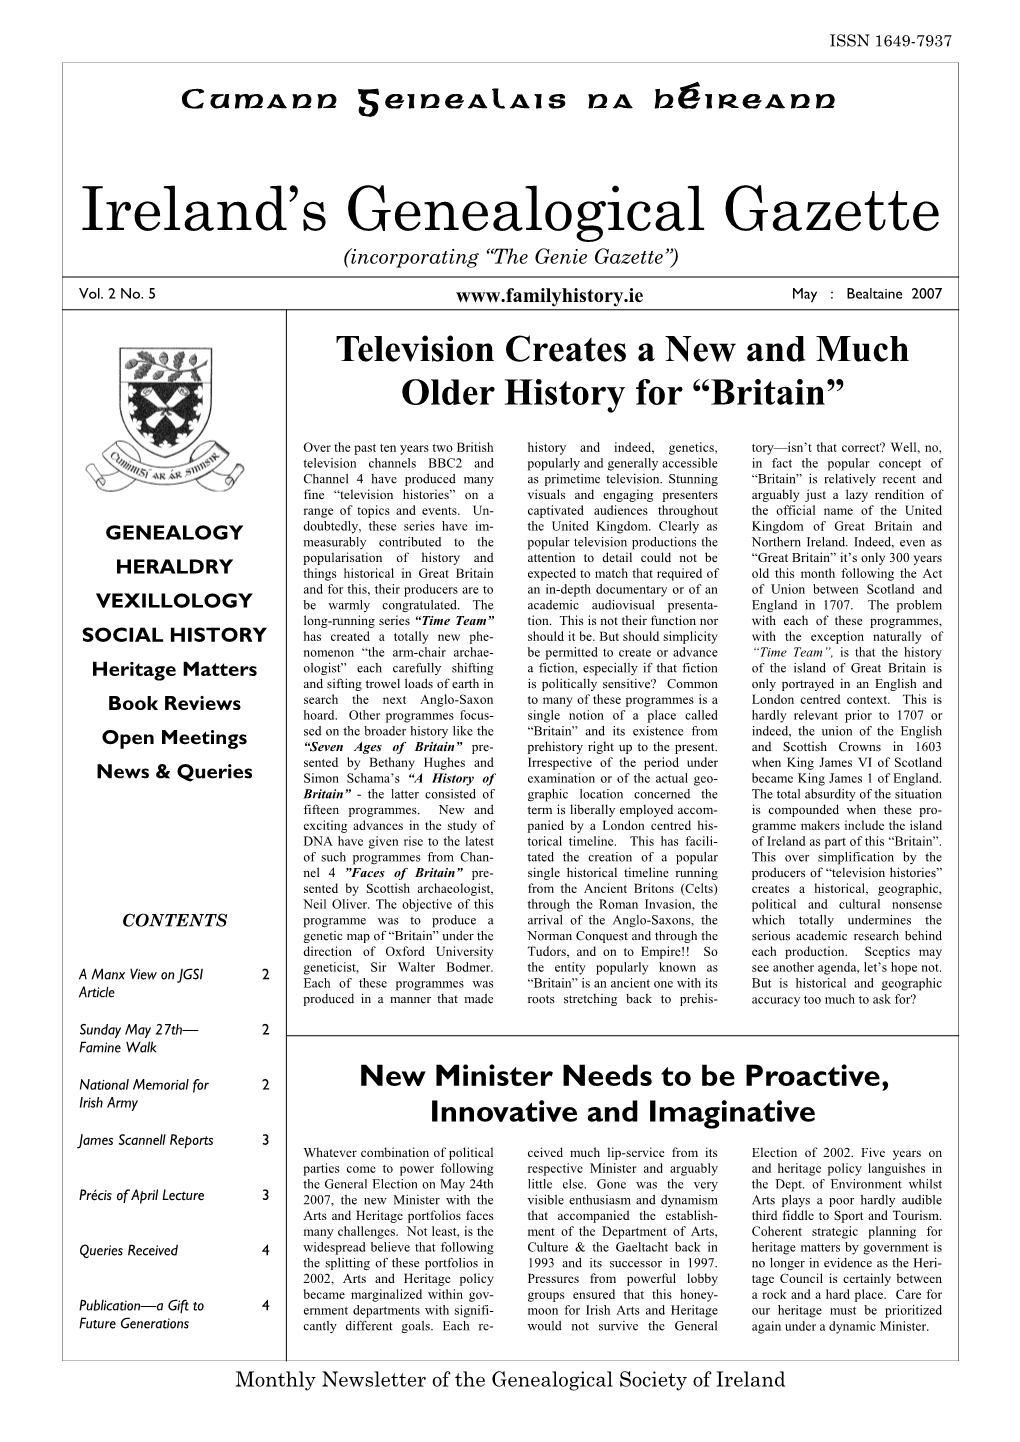 Ireland's Genealogical Gazette May 2007-1.Pub